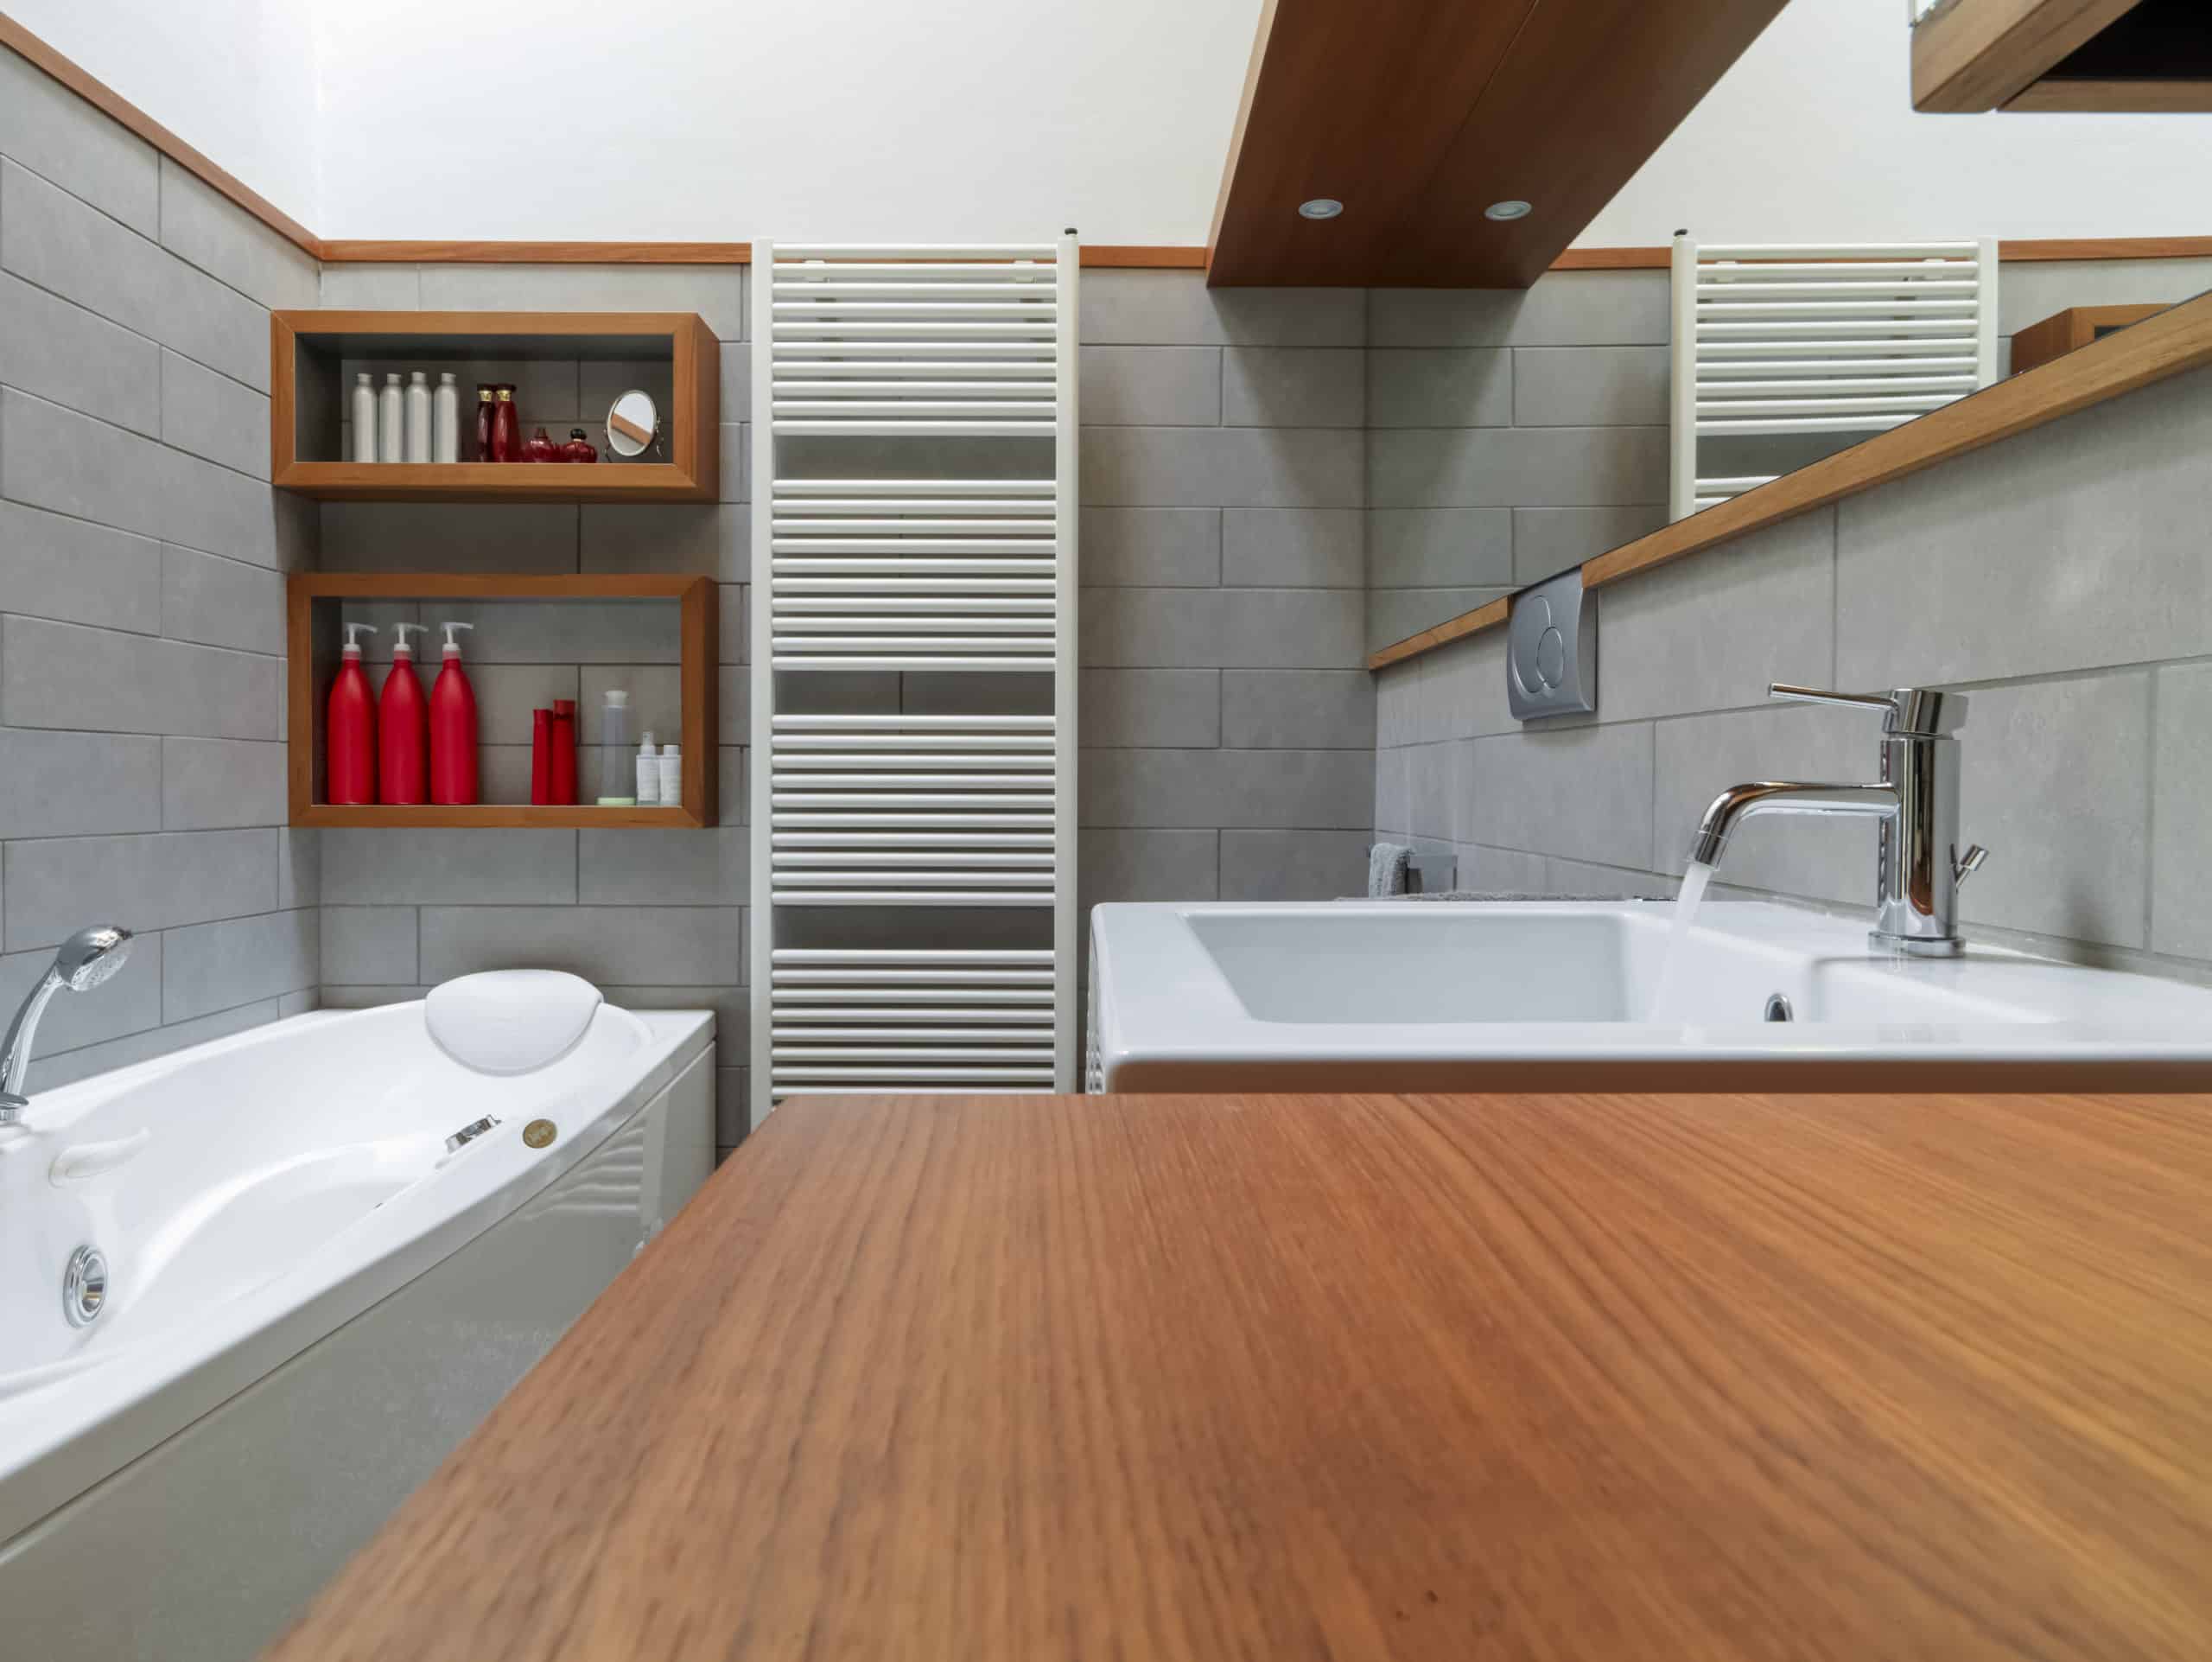 Reorganiza tu baño, estantería de madera y otros sistemas de